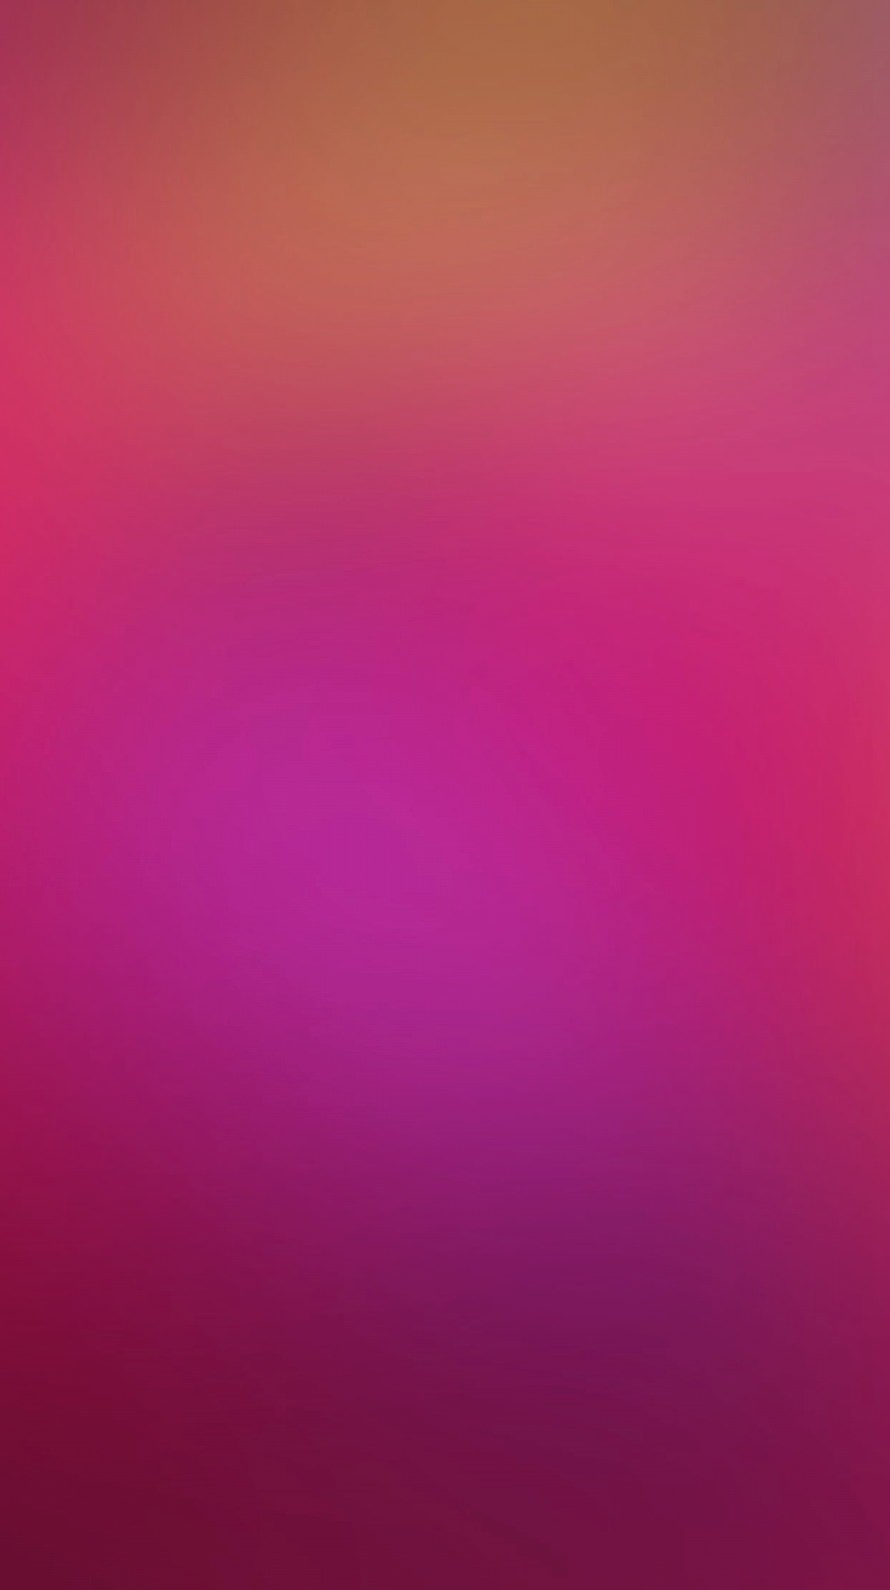 ビビッド・ピンク iPhone6壁紙